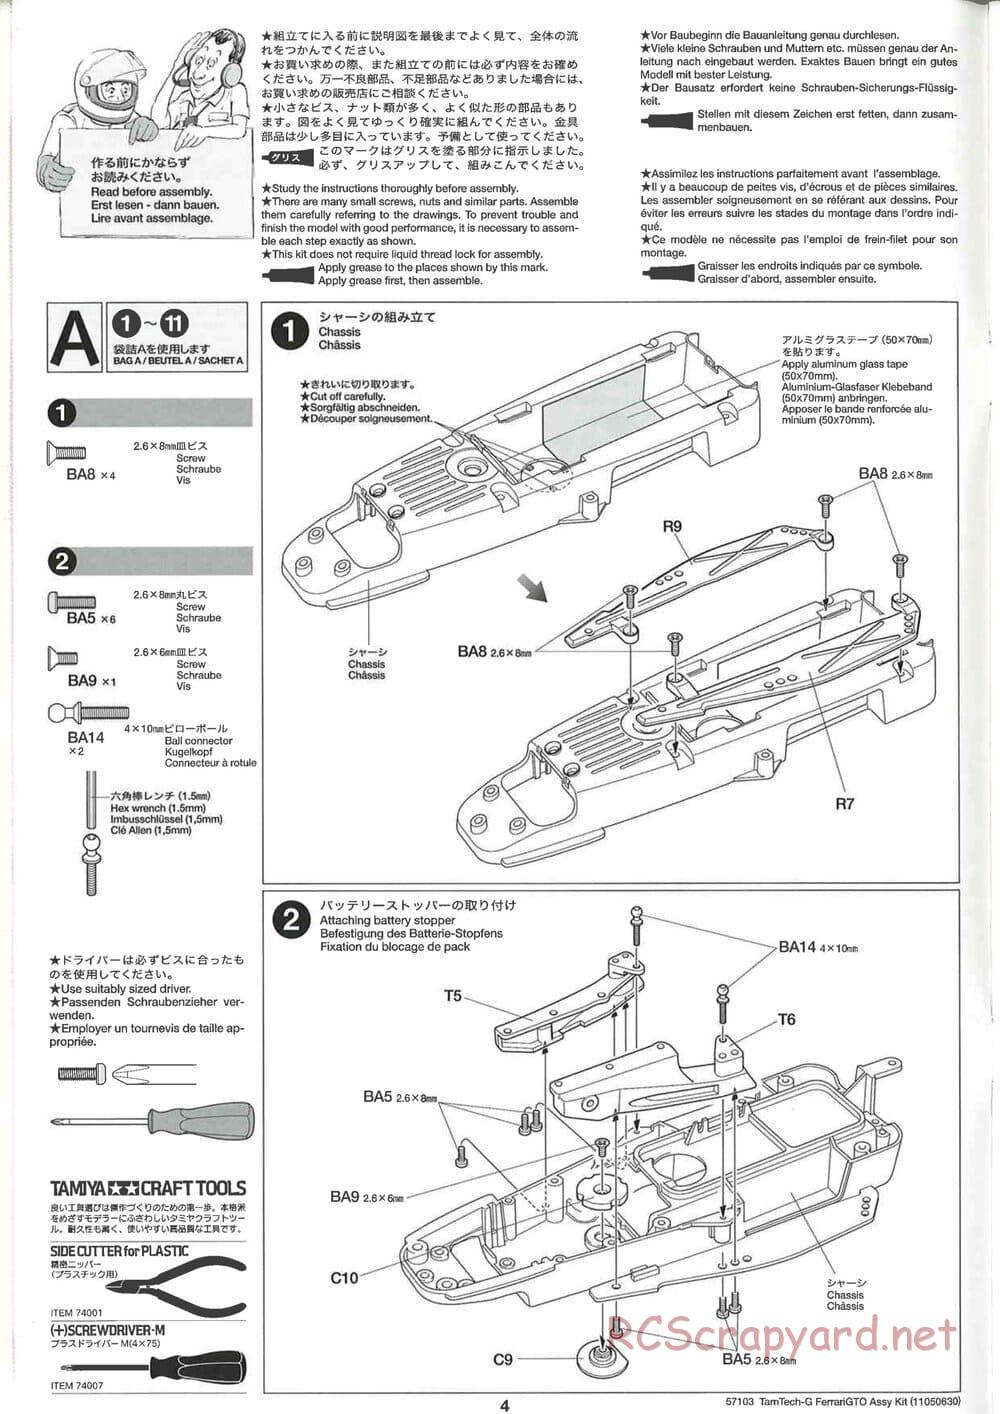 Tamiya - Ferrari 288 GTO - GT-01 Chassis - Manual - Page 4